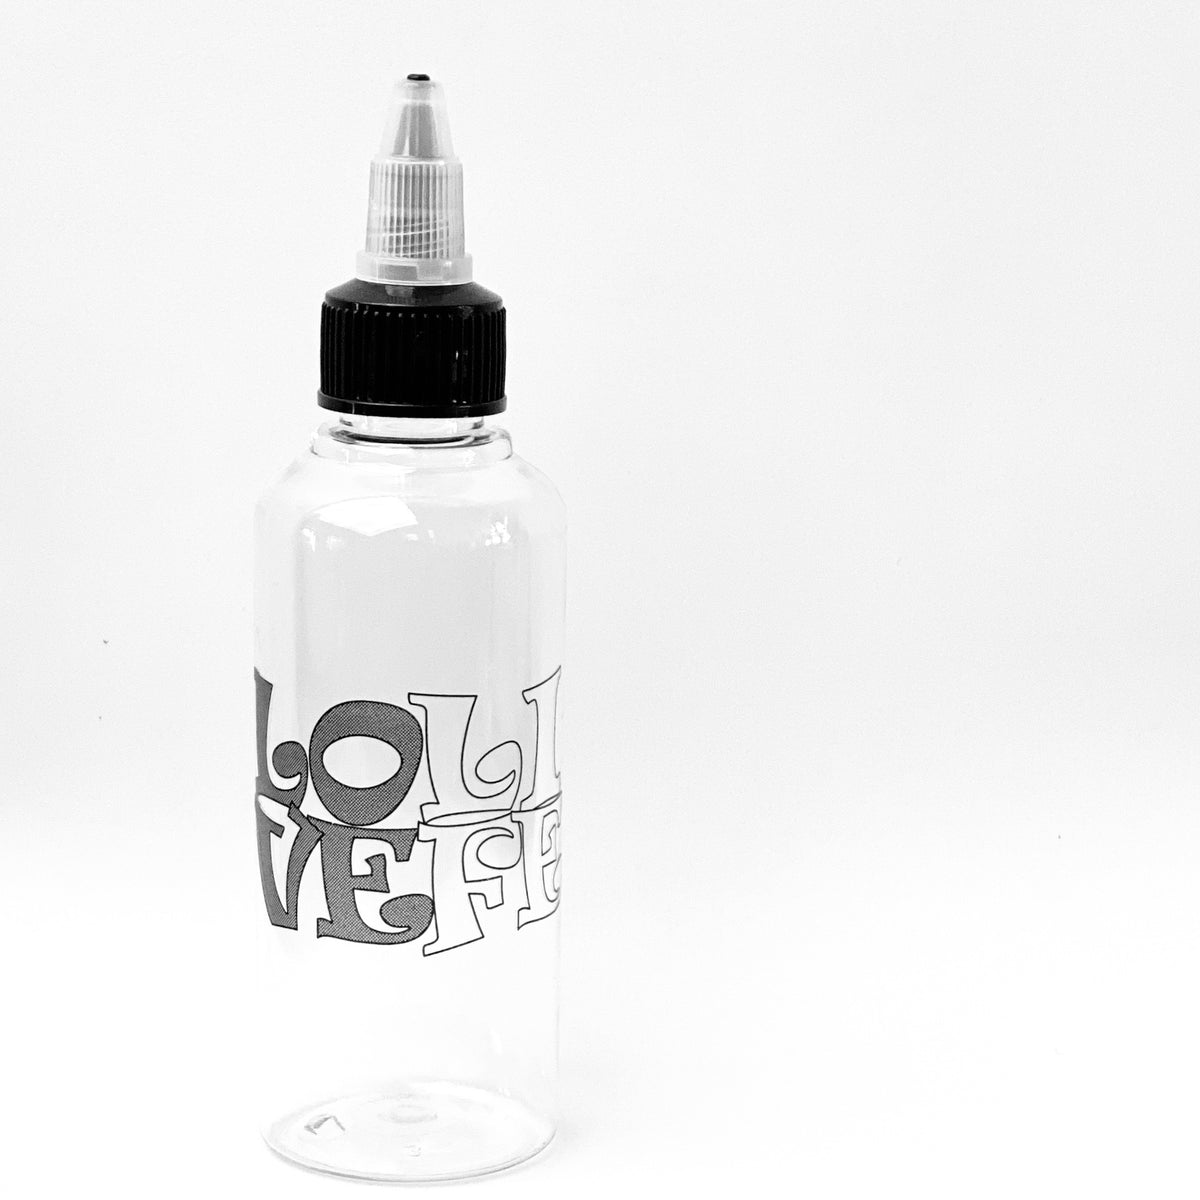 100 Pcs Mini Squeeze Bottles - Plastic Squirt Bottles for Liquids